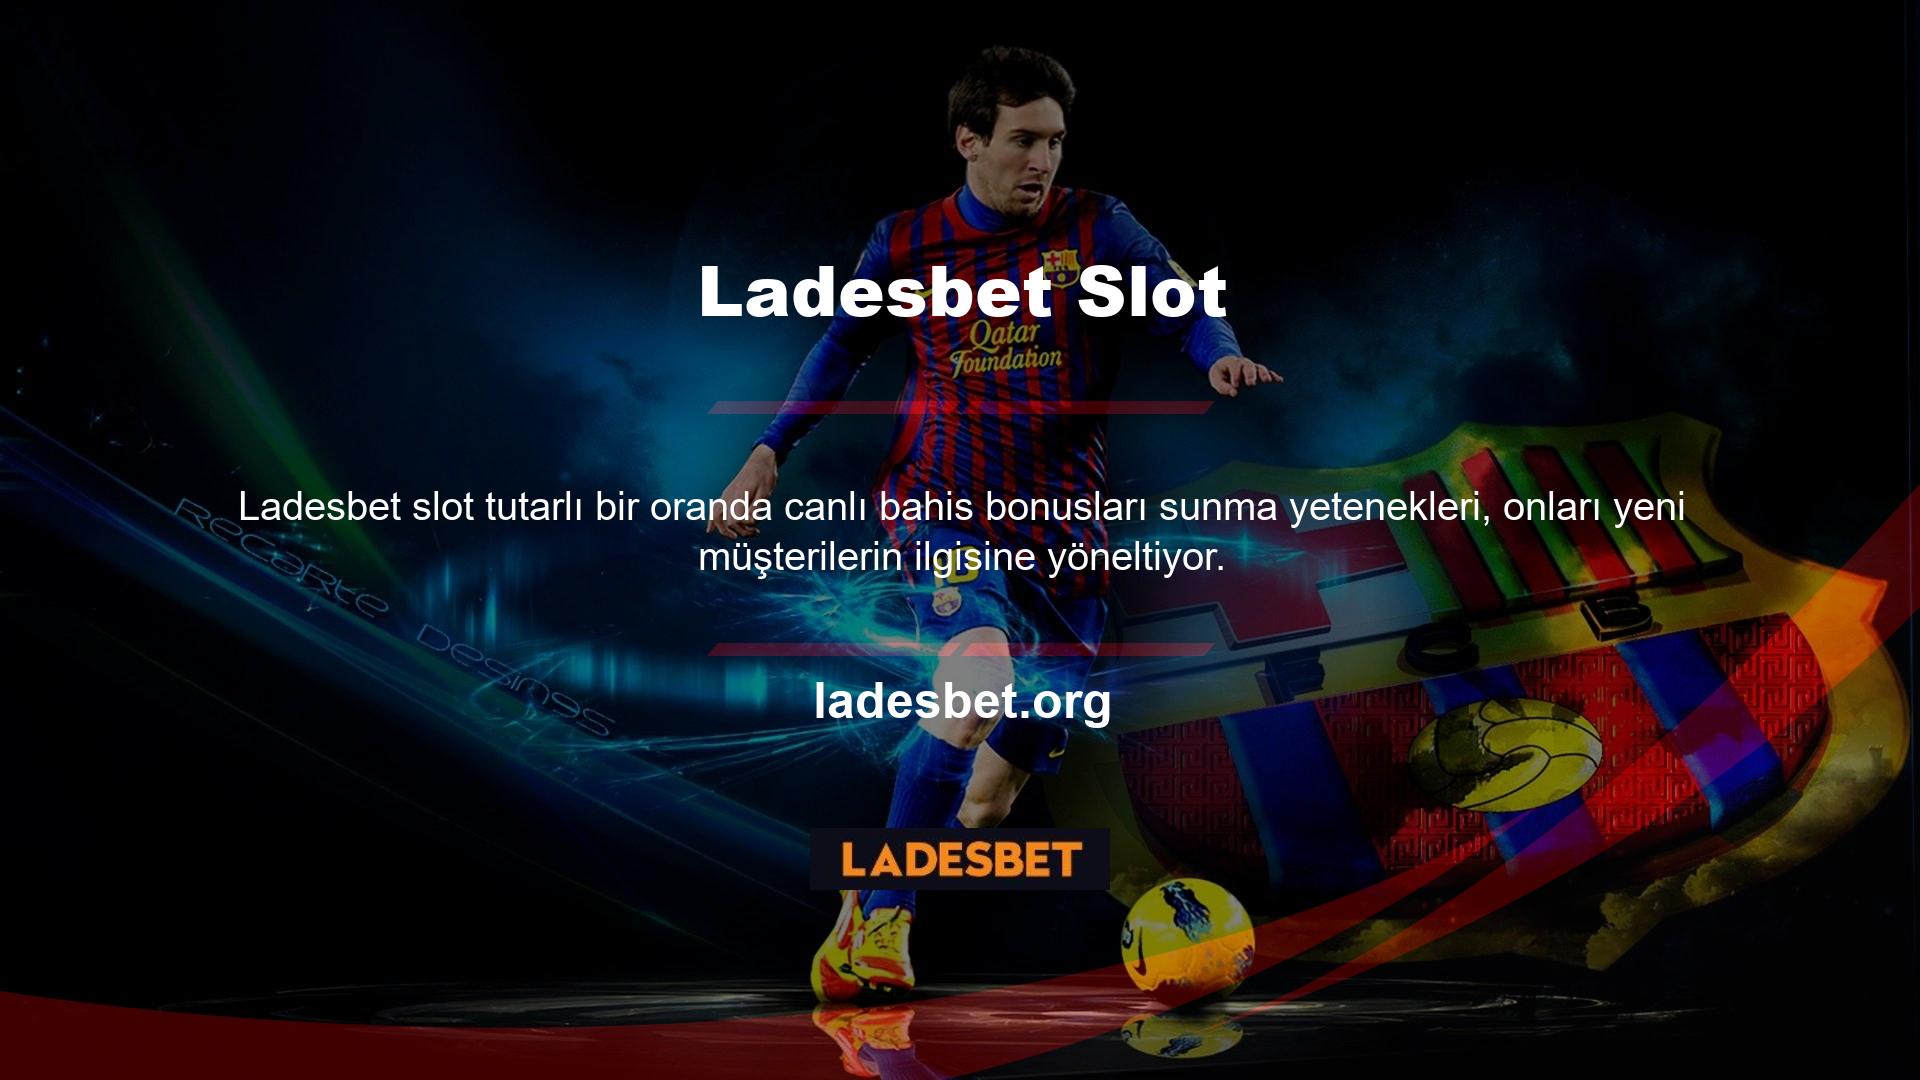 Ladesbet Slot Oyunları sayfası, slot oyunları hakkında kapsamlı bilgi sağlar ve Ladesbet, spor bahisleri ve canlı bahislerde lider sağlayıcı olarak ortaya çıkmıştır